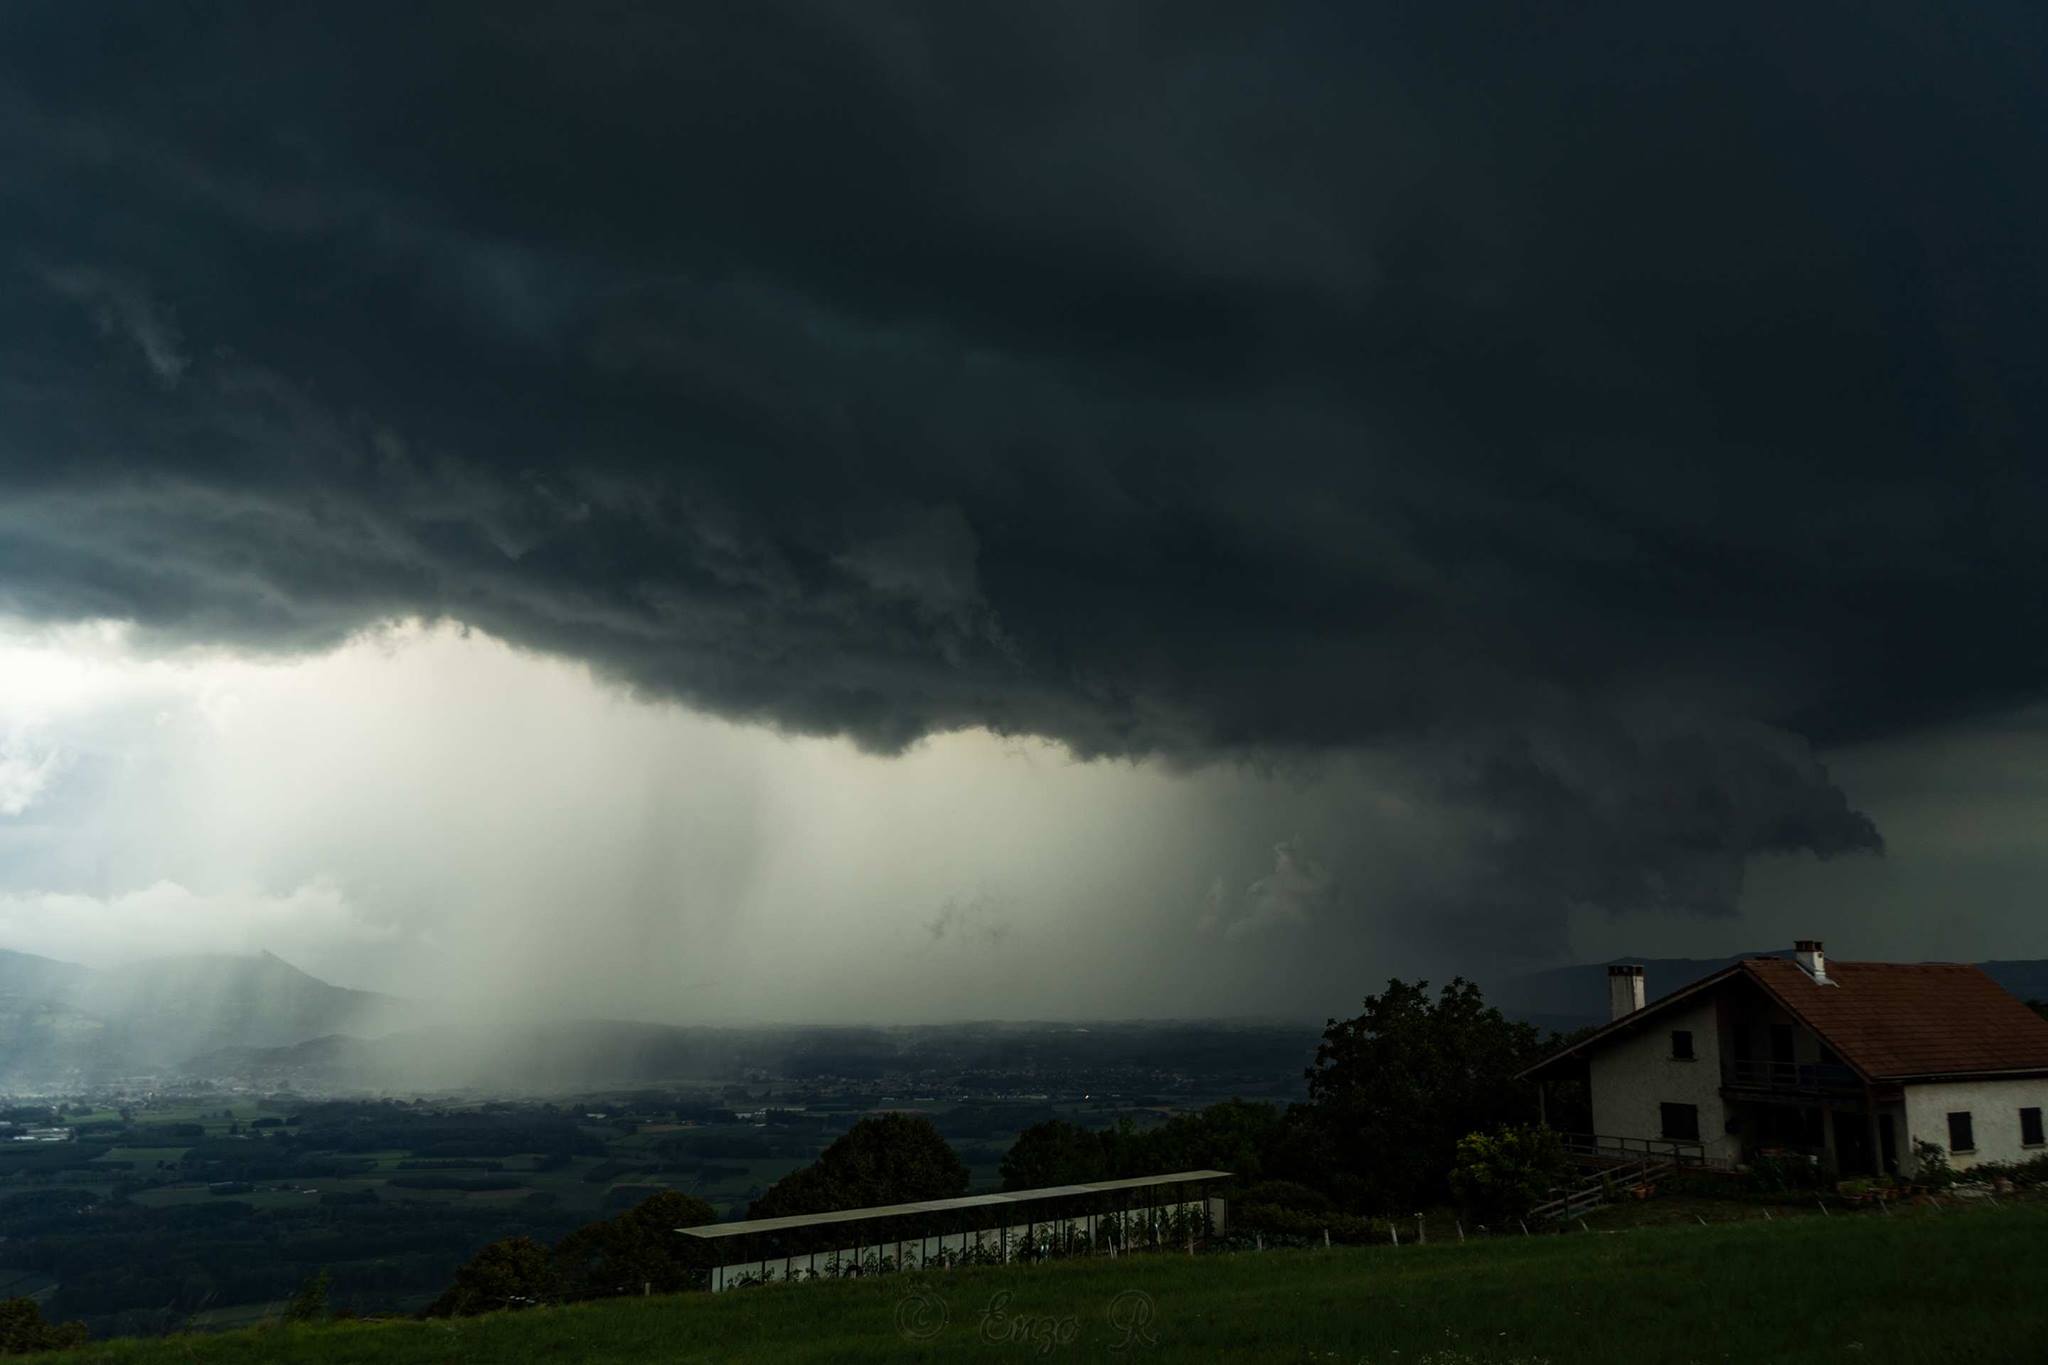 Photo de l'orage violent sur Voiron en Isère hier (supercellule HP) par Enzo Retteler - 22/07/2017 19:00 - Enzo RETTELER